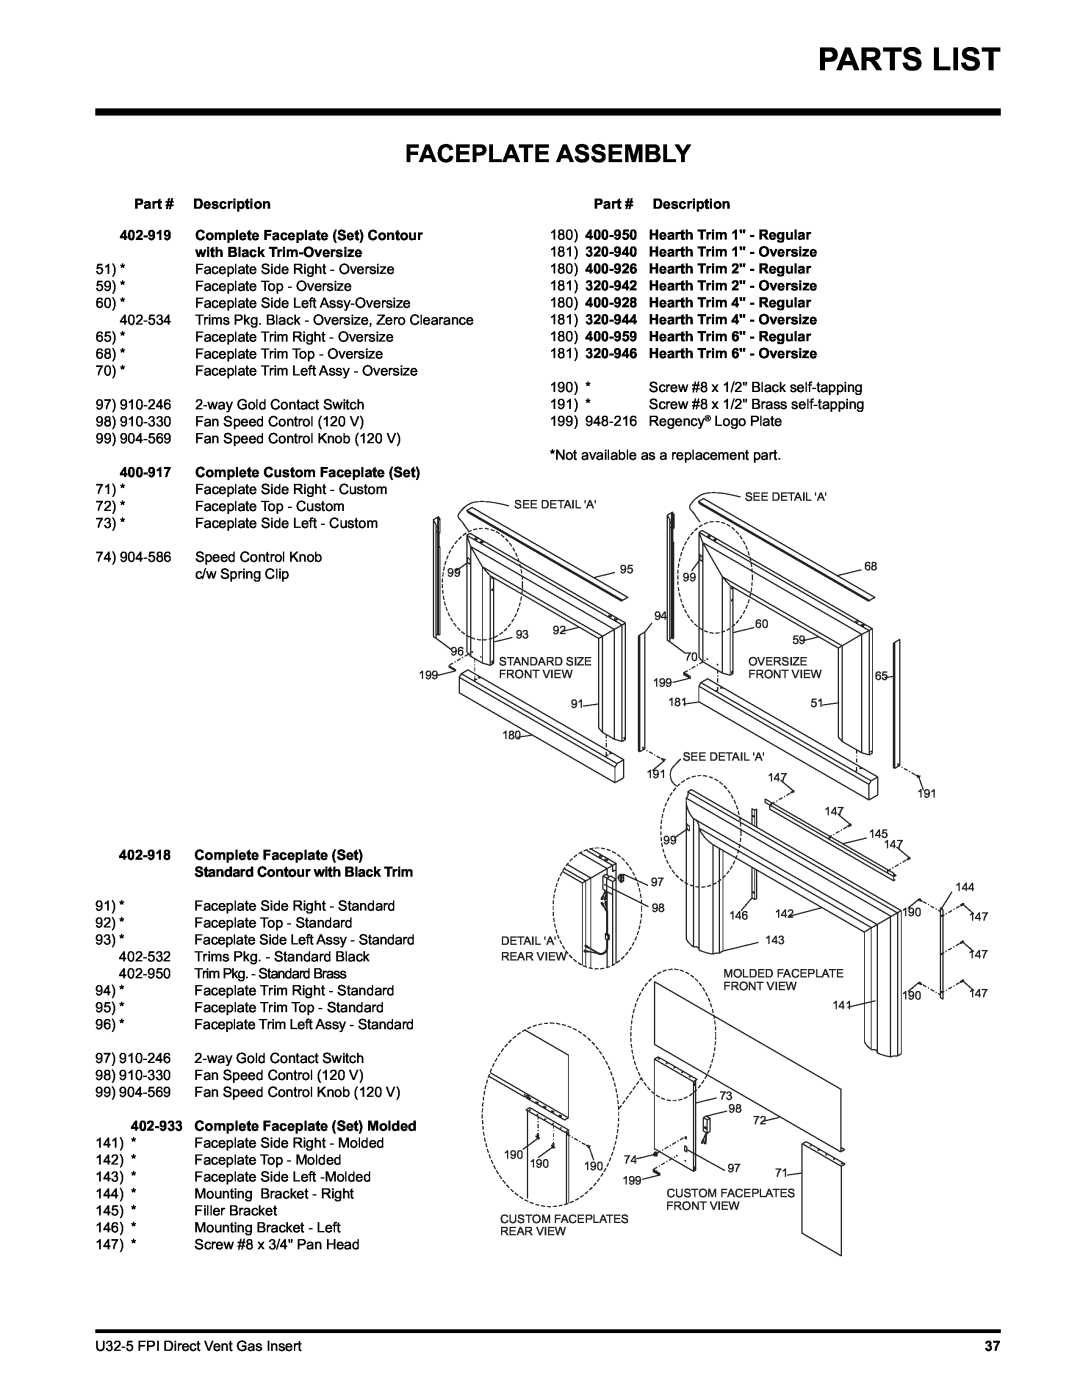 Hampton Direct U32 Parts List, Faceplate Assembly, Description, 402-919, Complete Faceplate Set Contour, 400-917, 402-918 